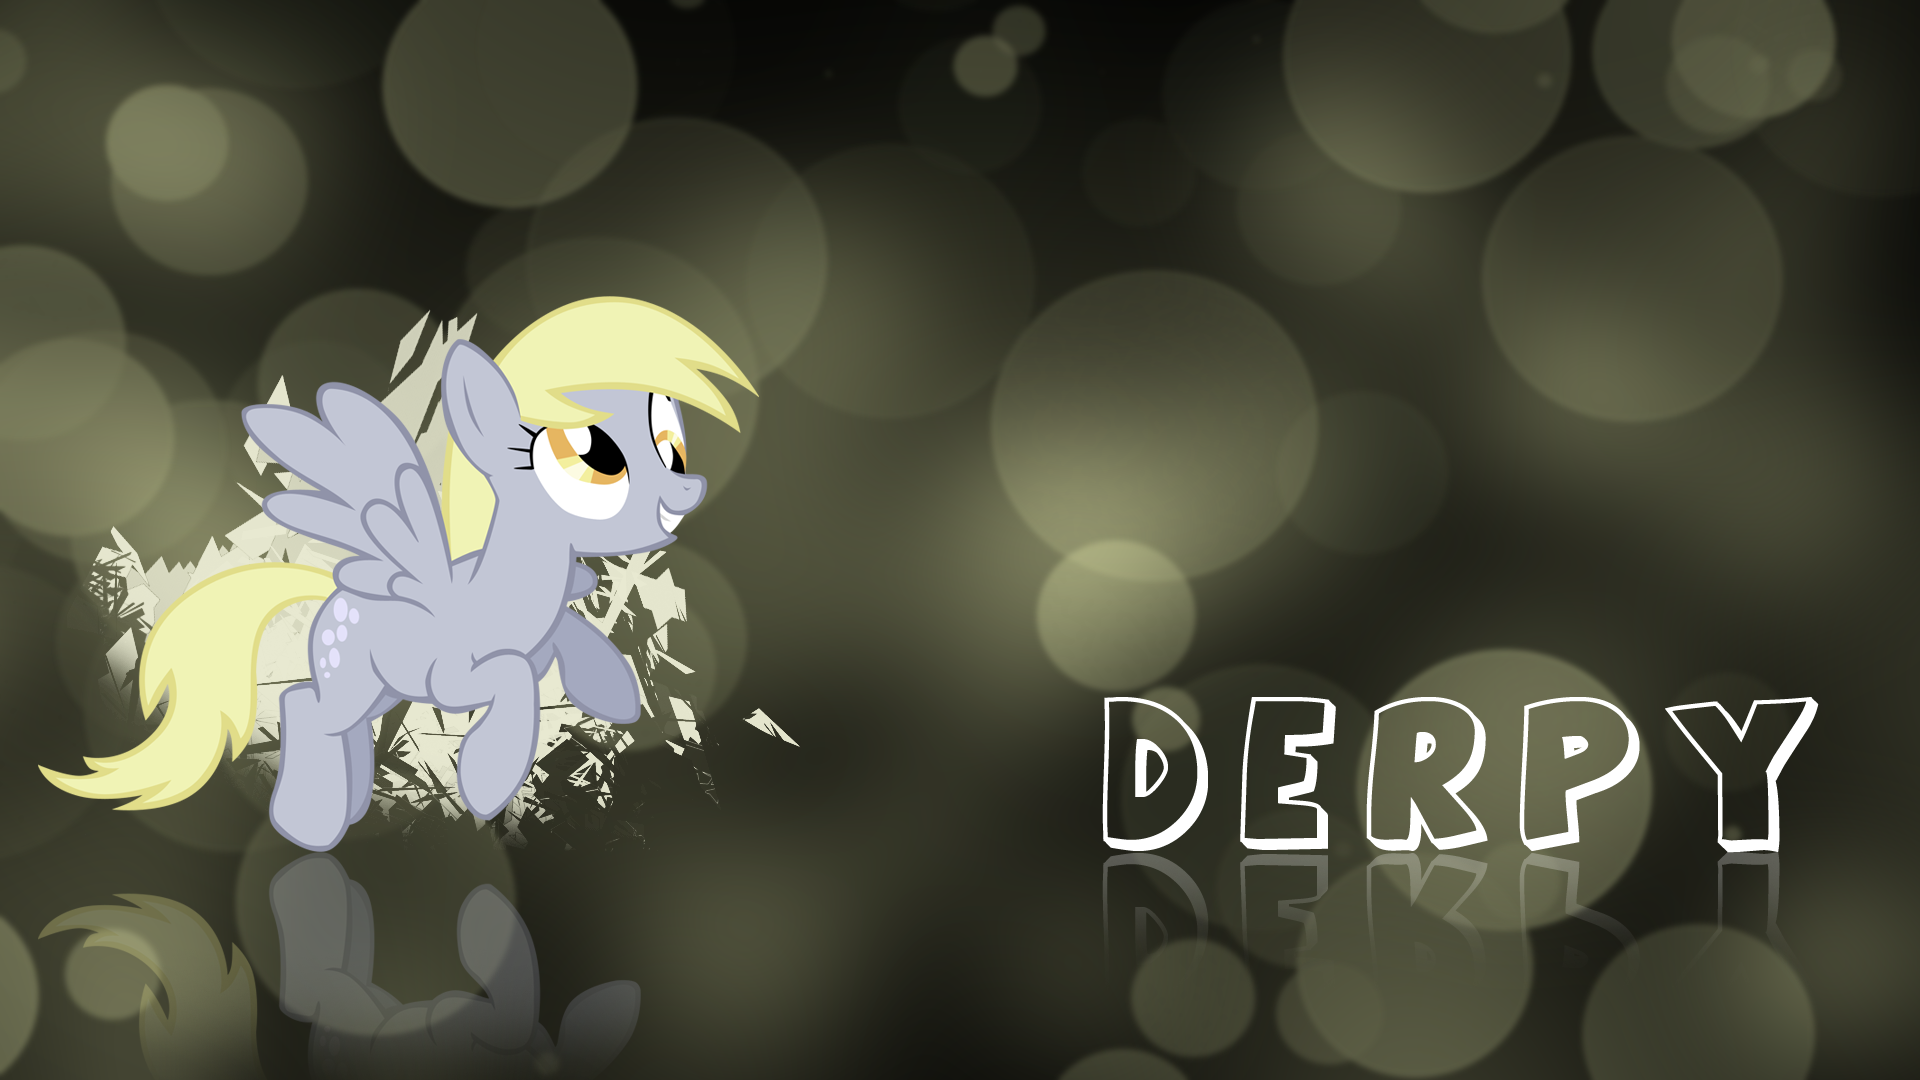 Derpy Derpy Derp Derp by owlet57